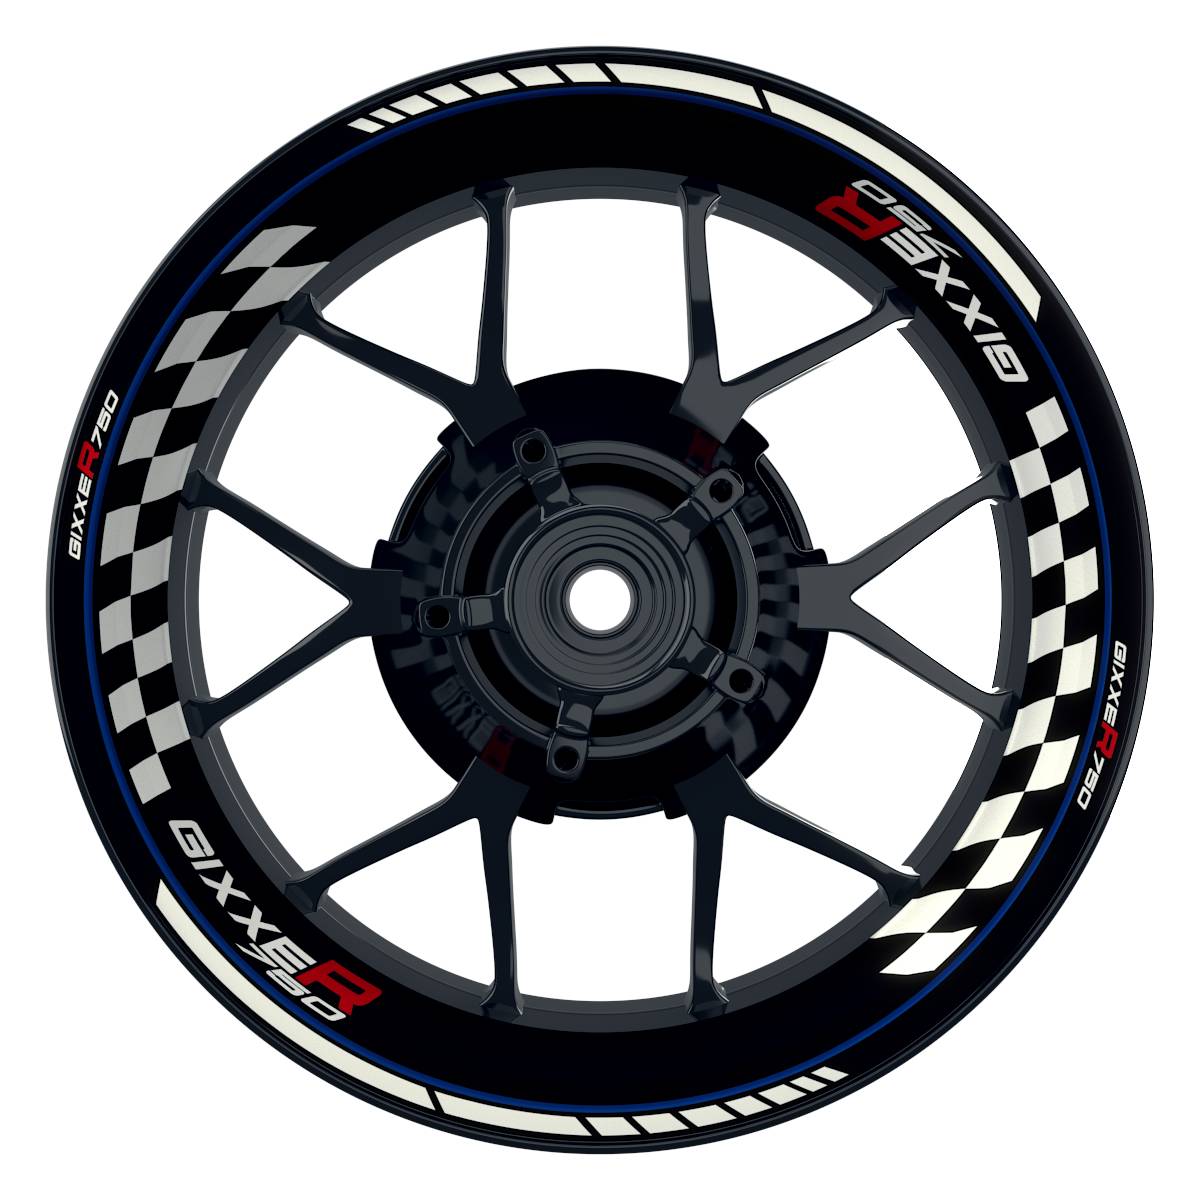 GIXXER750 Grid schwarz blau Wheelsticker Felgenaufkleber